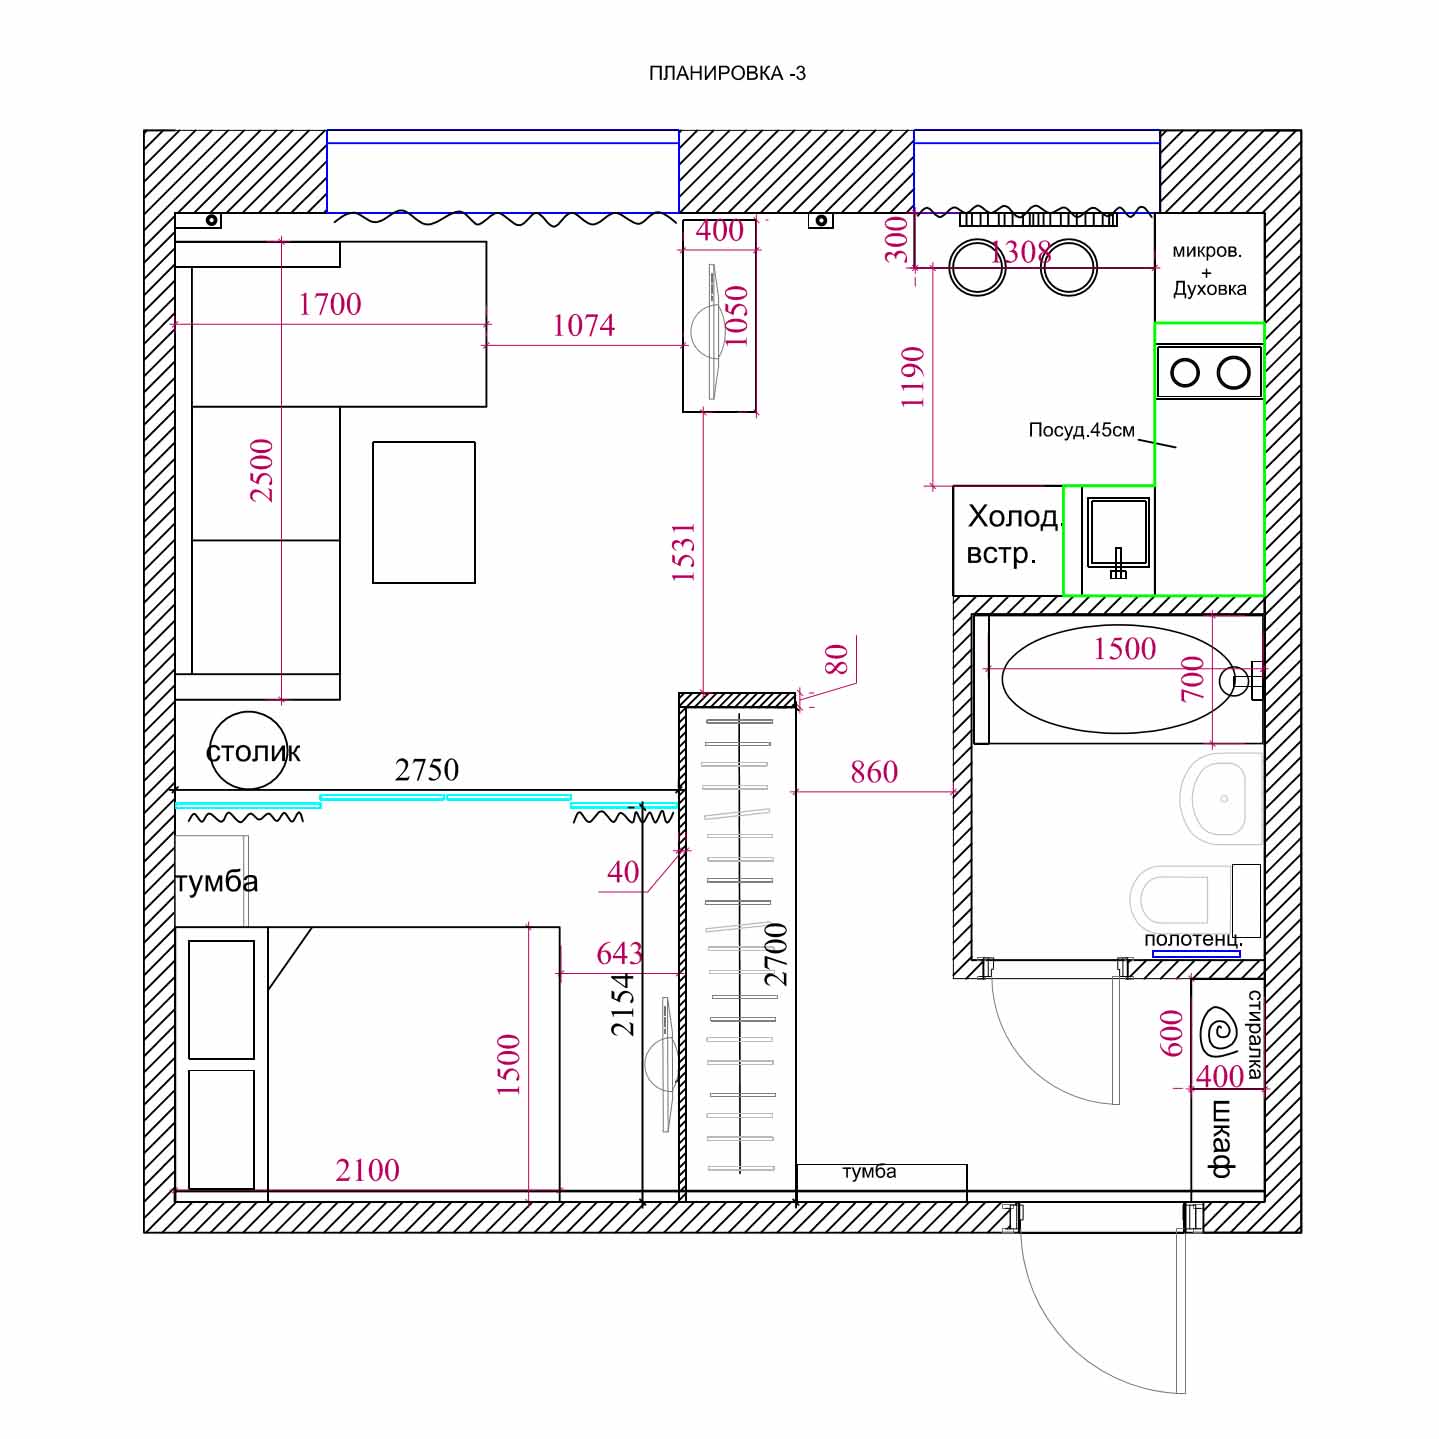 Планировка квартиры 3 комнатной с размерами: схемы и проекты домов п3м, п 30, 55 и 65